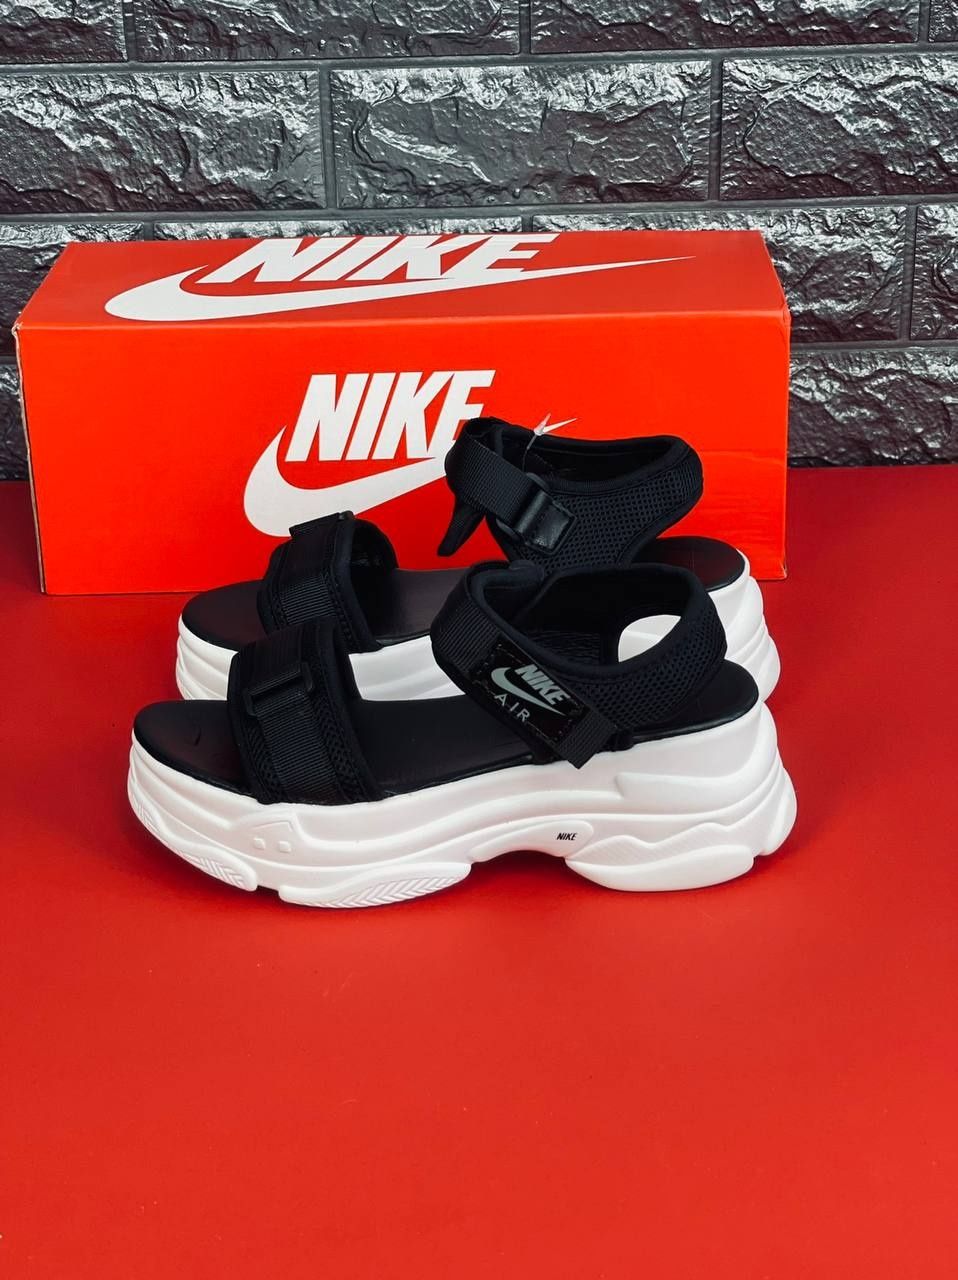 Женские босоножки Nike сандалии чёрного цвета Найк 36-40 текстиль